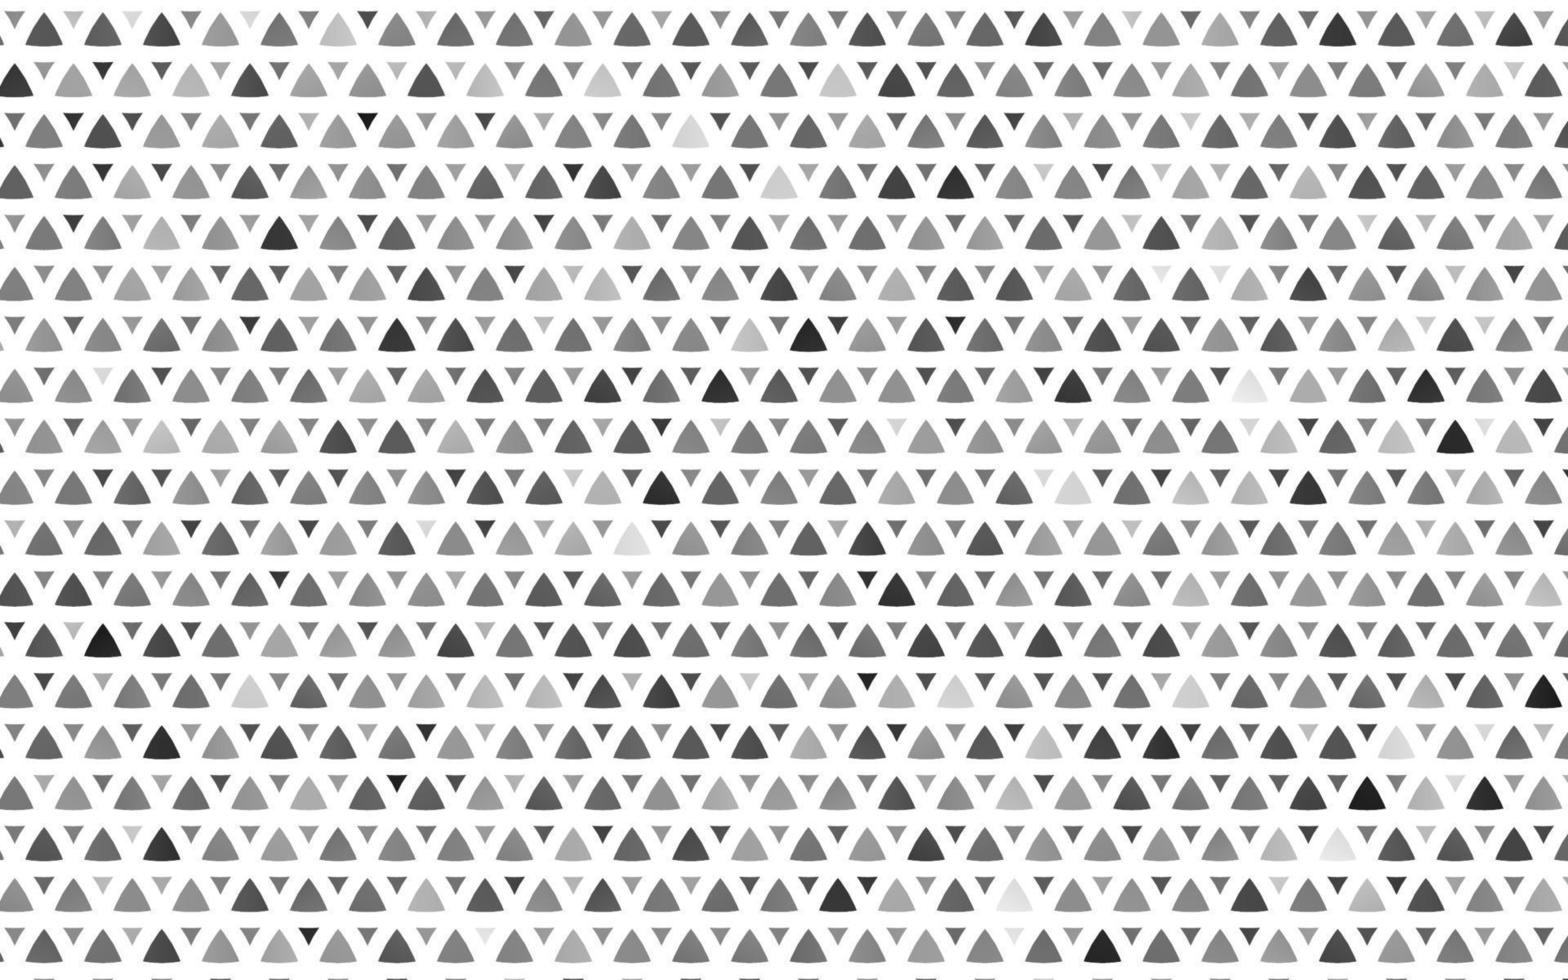 licht zilver, grijs vector naadloze achtergrond met driehoeken.